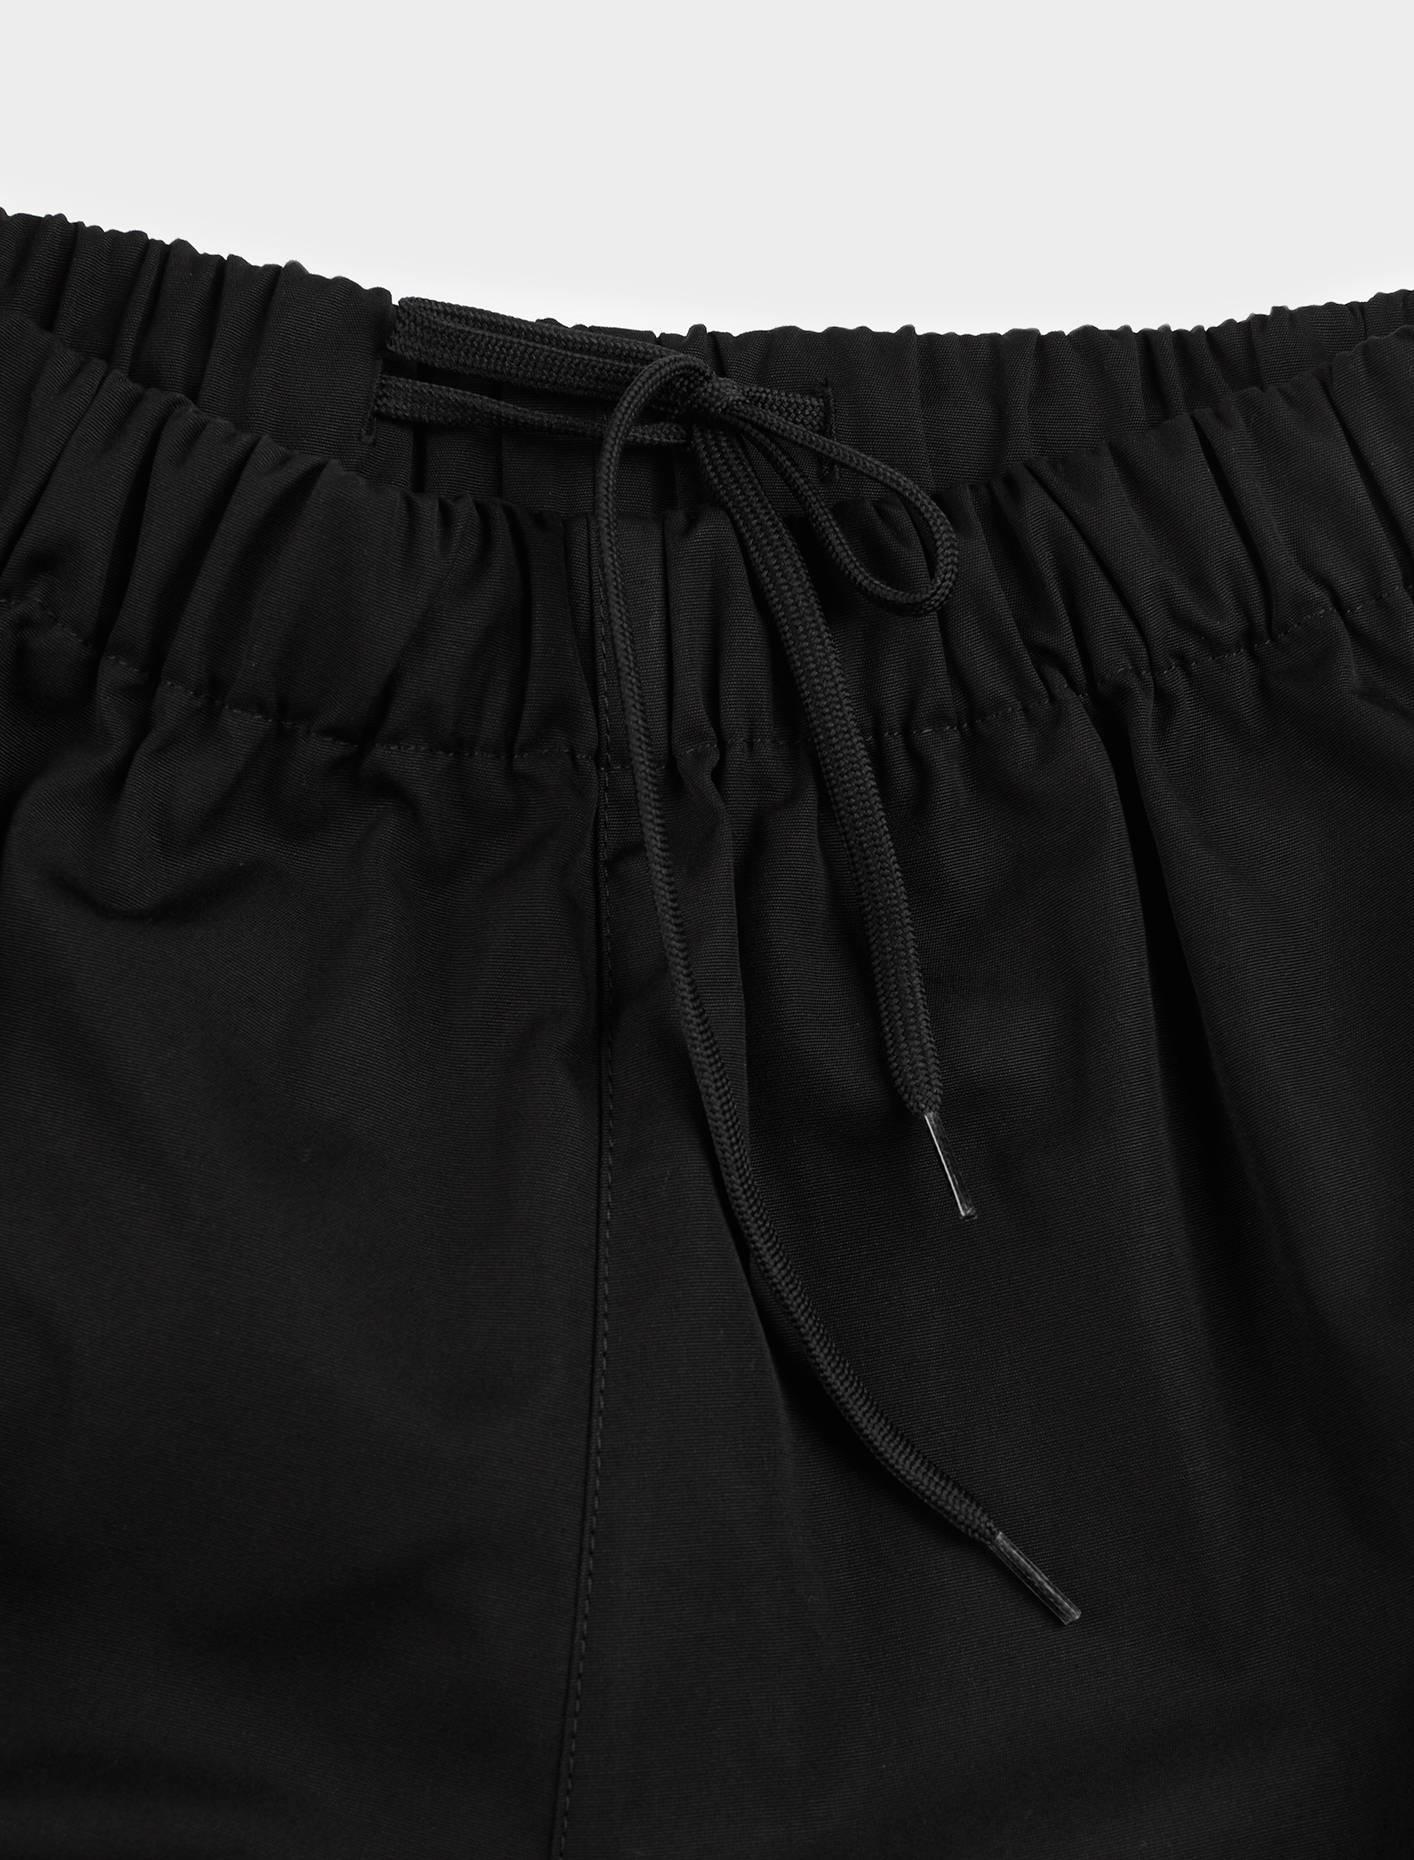 Prada Popline Shorts in Black | Voo Store Berlin | Worldwide Shipping